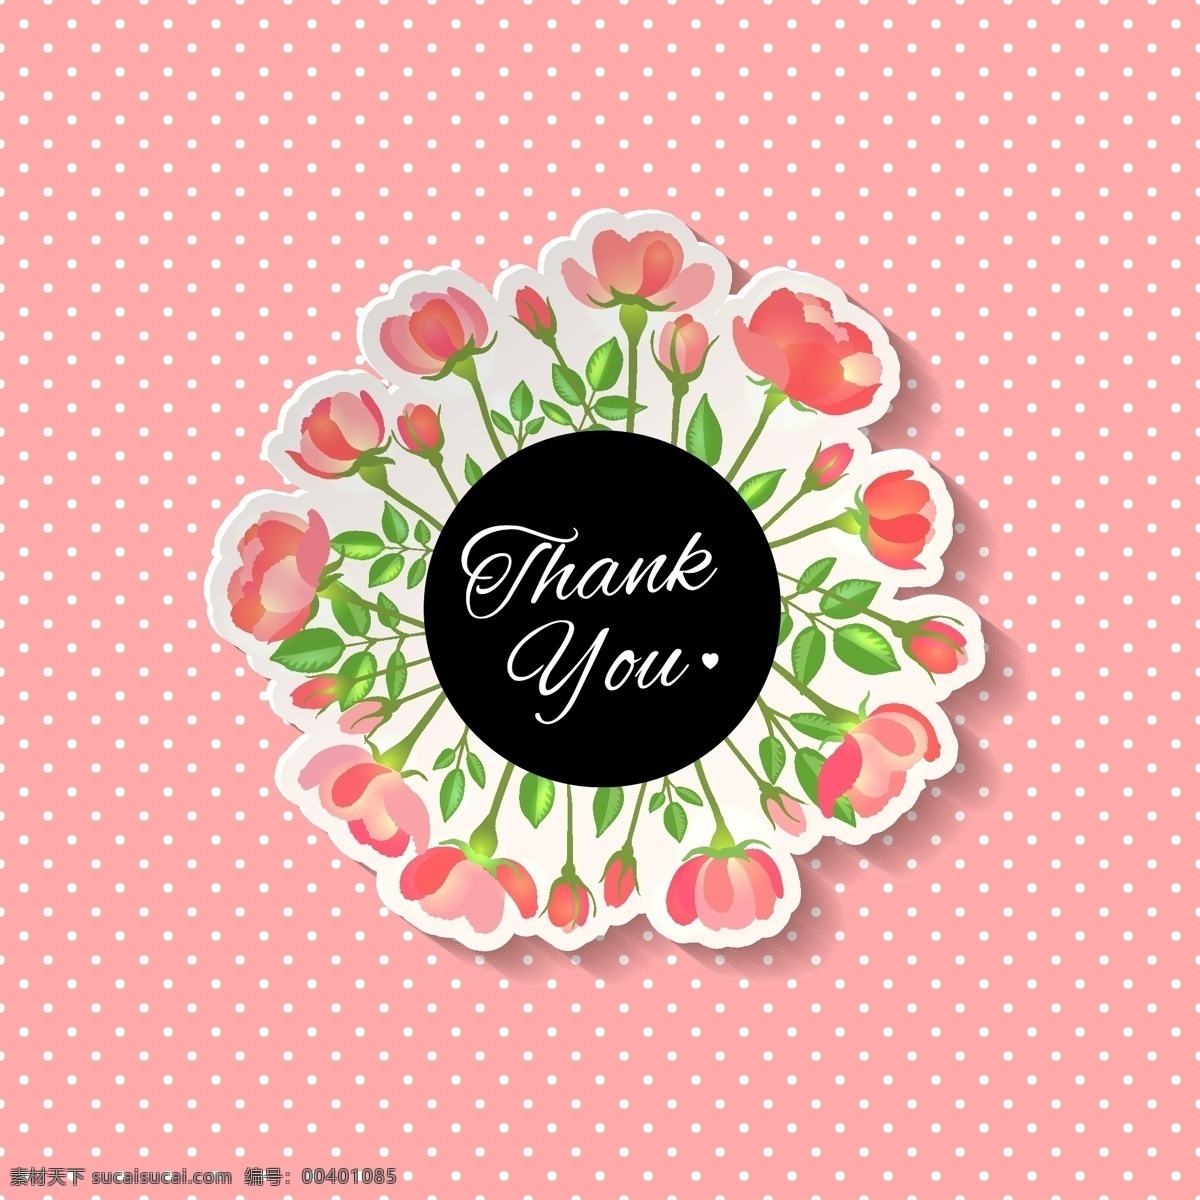 矢量 粉色 感谢 感恩 卡片 花朵 创意设计 广告背景 平面设计素材